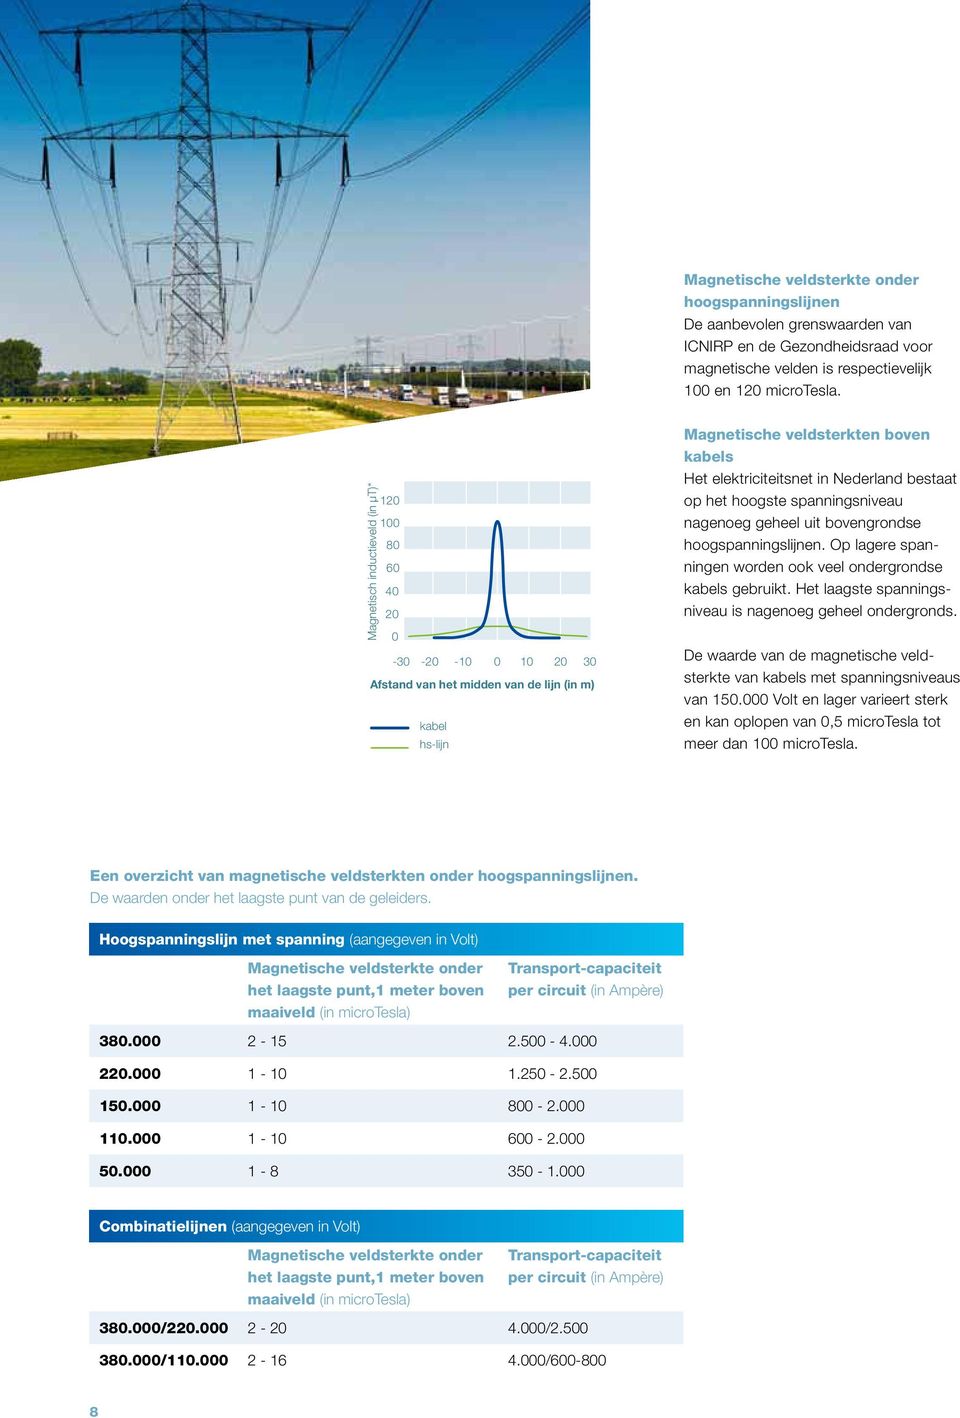 Nederland bestaat op het hoogste spanningsniveau nagenoeg geheel uit bovengrondse hoogspanningslijnen. Op lagere spanningen worden ook veel ondergrondse kabels gebruikt.